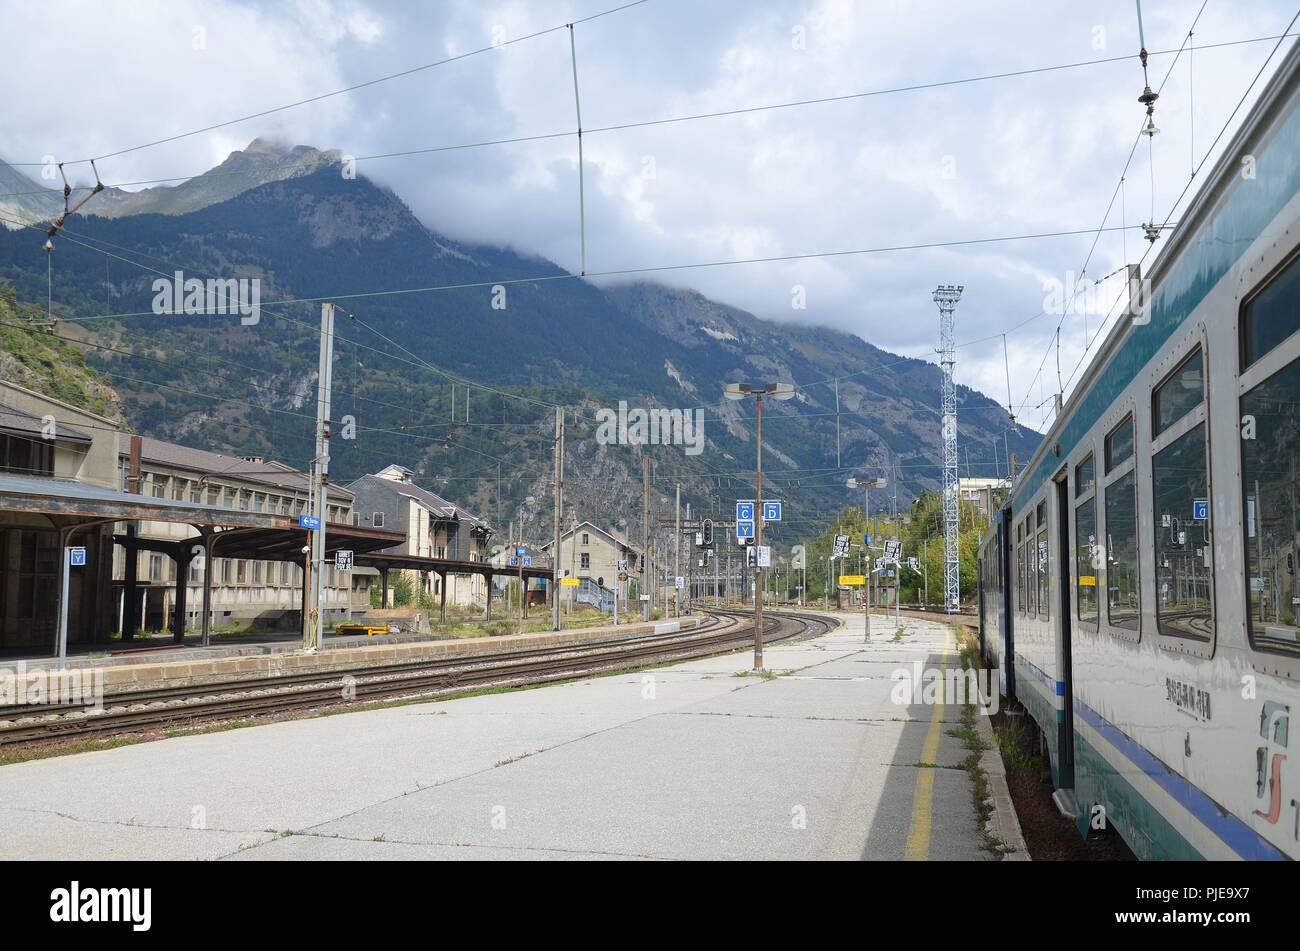 Der französische Bahnhof von Modane an der Grenze zu italien, in den Alpen gelegen Banque D'Images